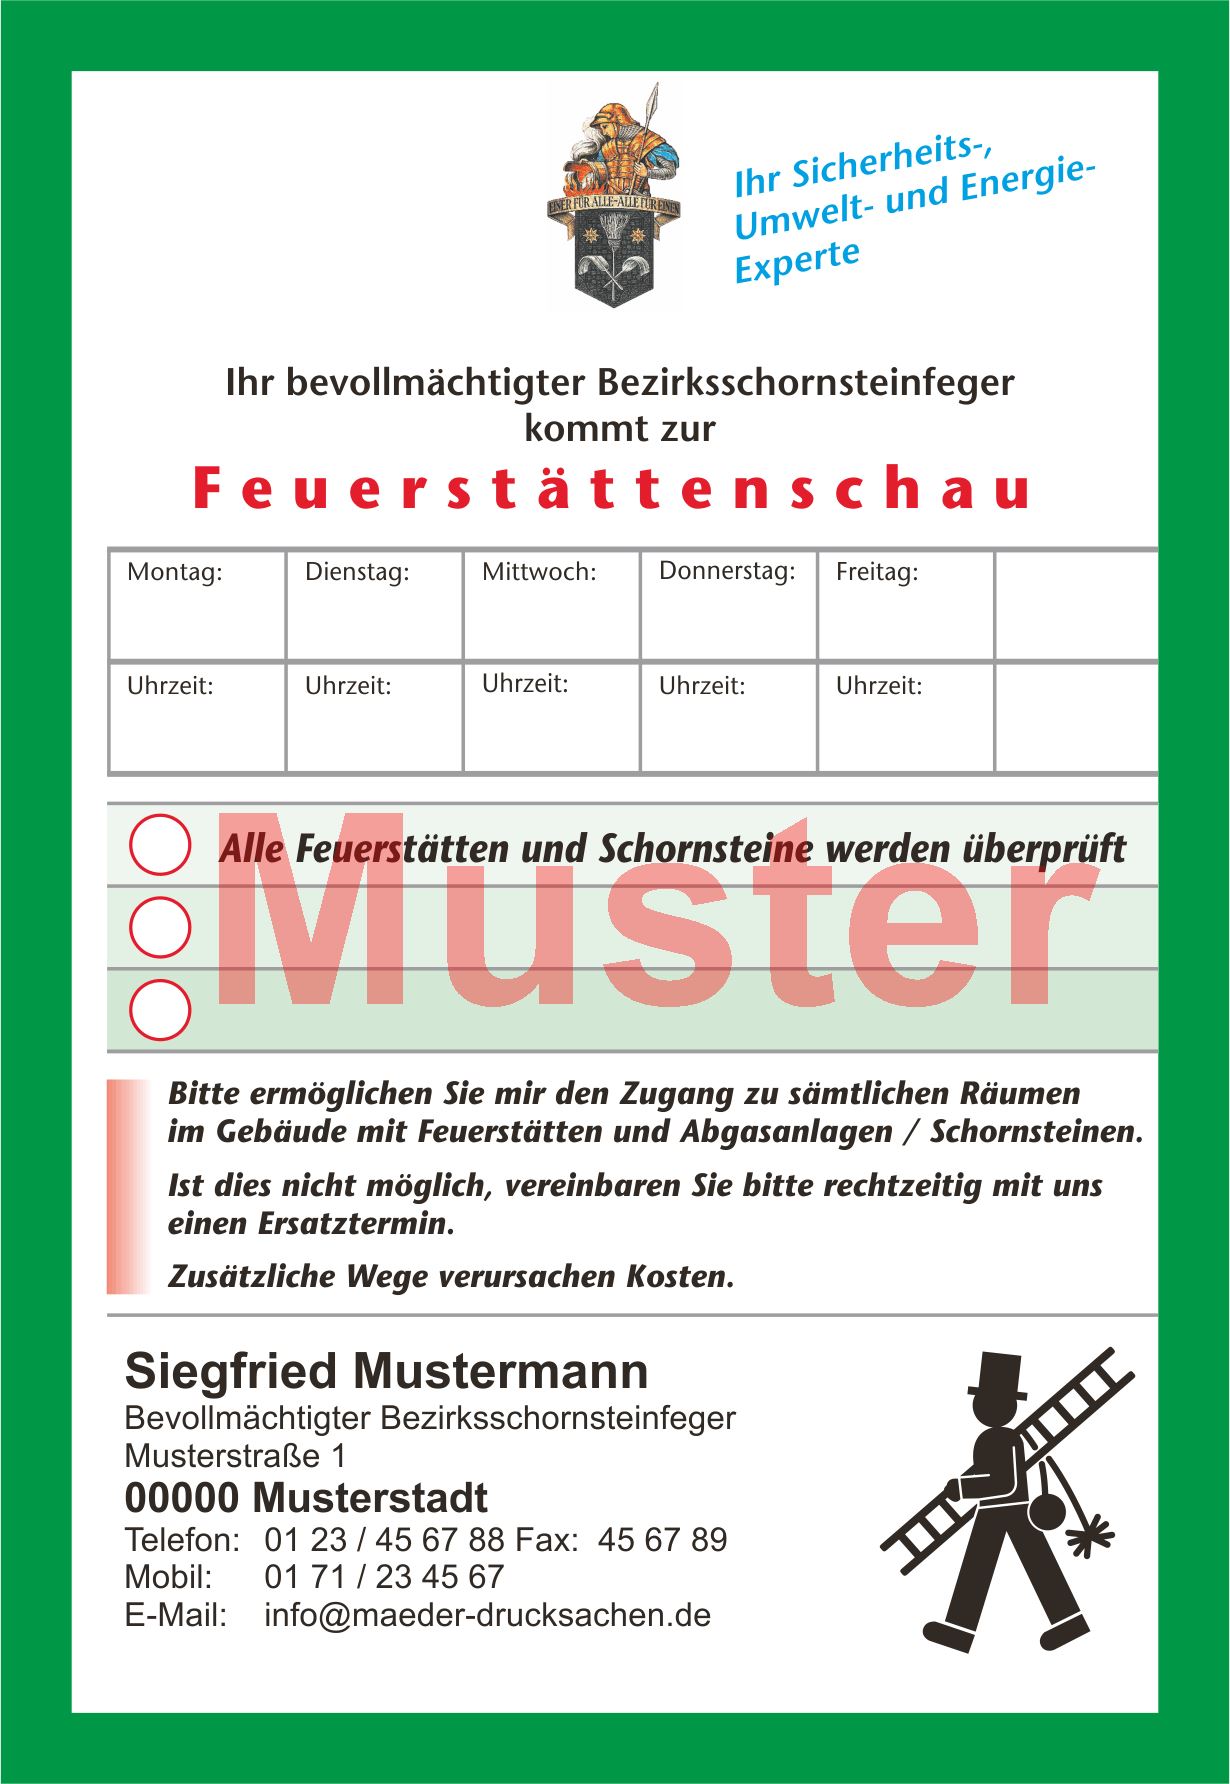 Ansagezettel "Feuerstättenschau", Florian, DIN A 6,mit Firmeneindruck